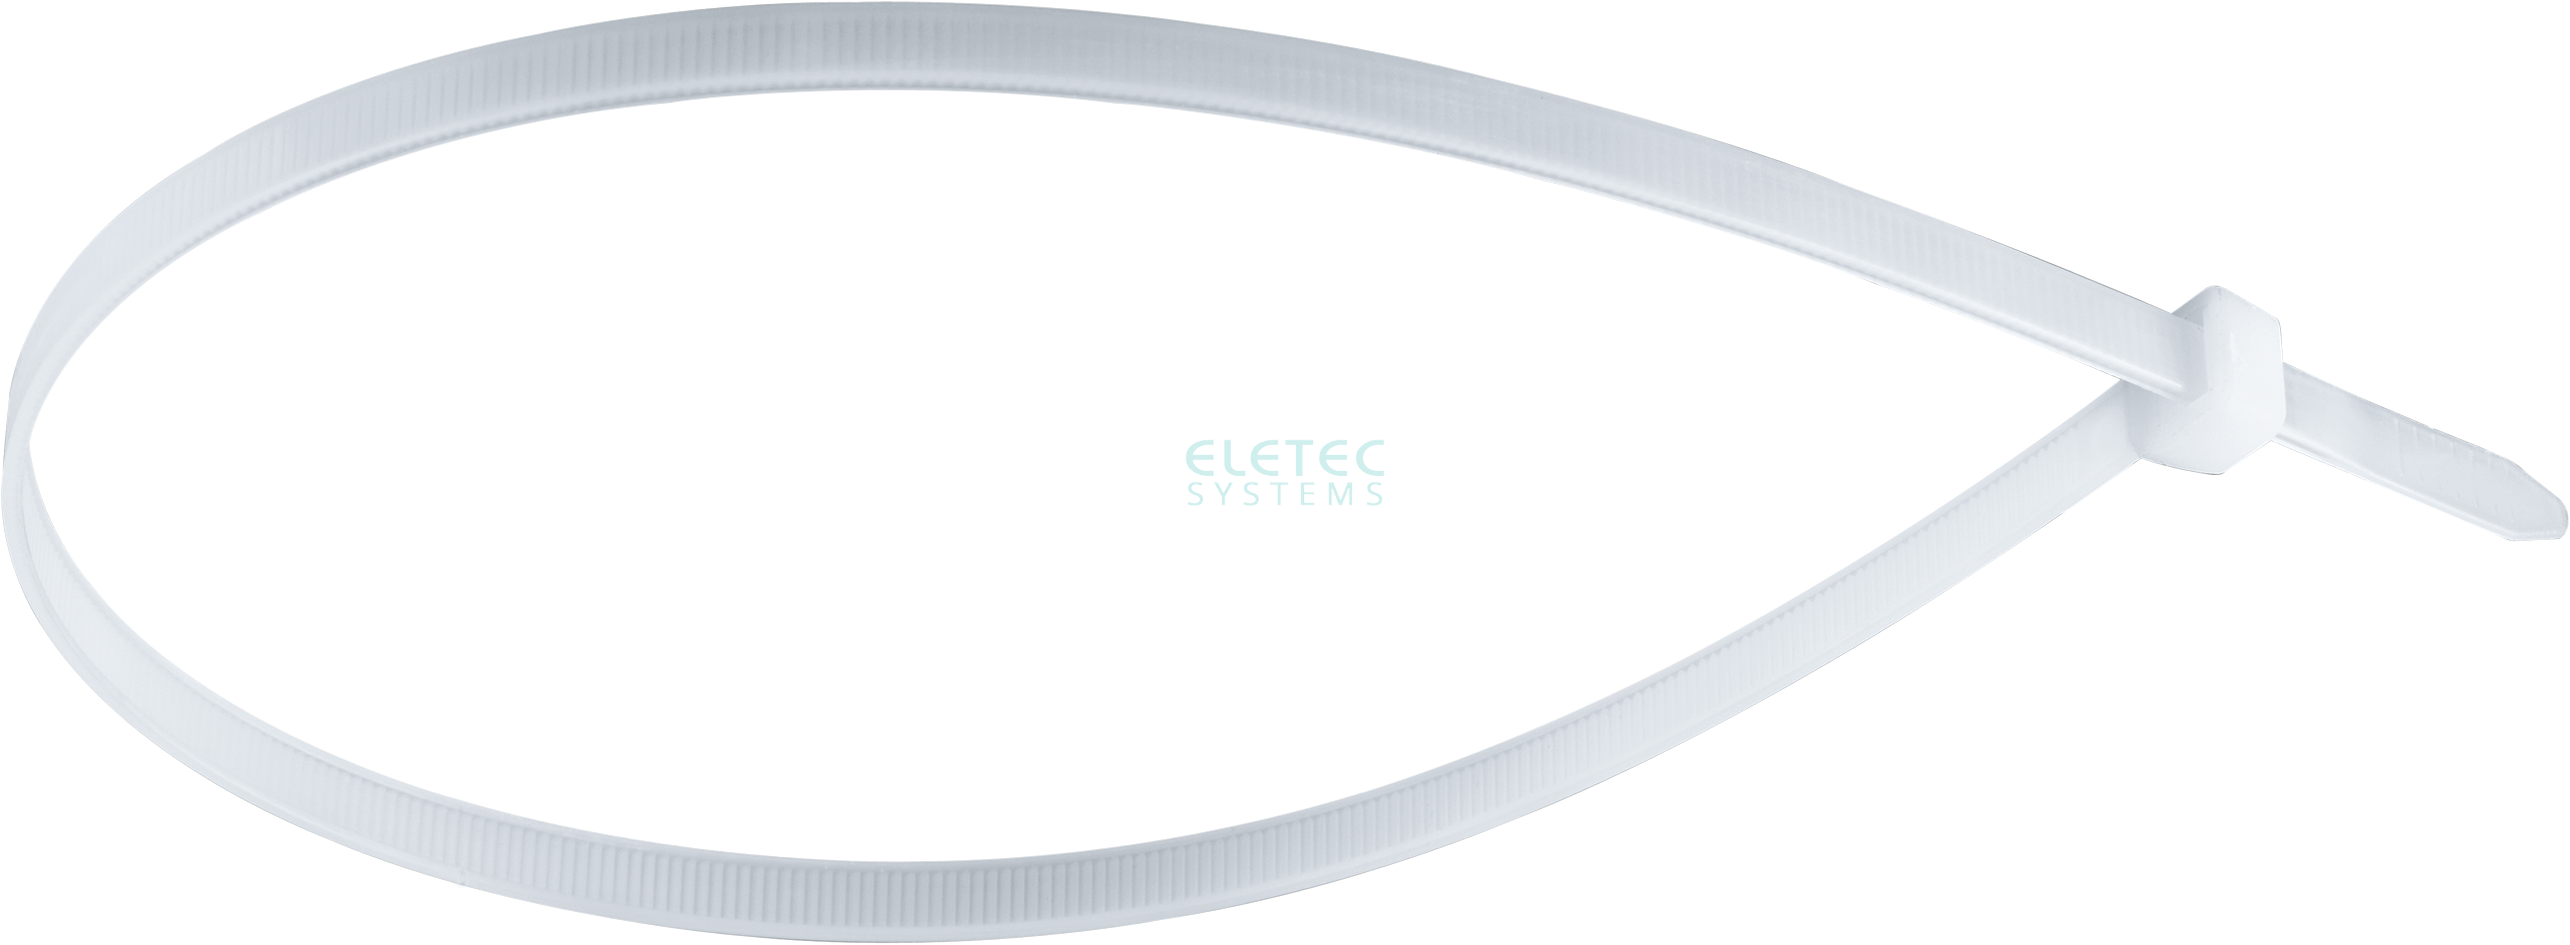 картинка Стяжка для кабеля 290х7,6 бесцветная (100 шт) Eletec Systems